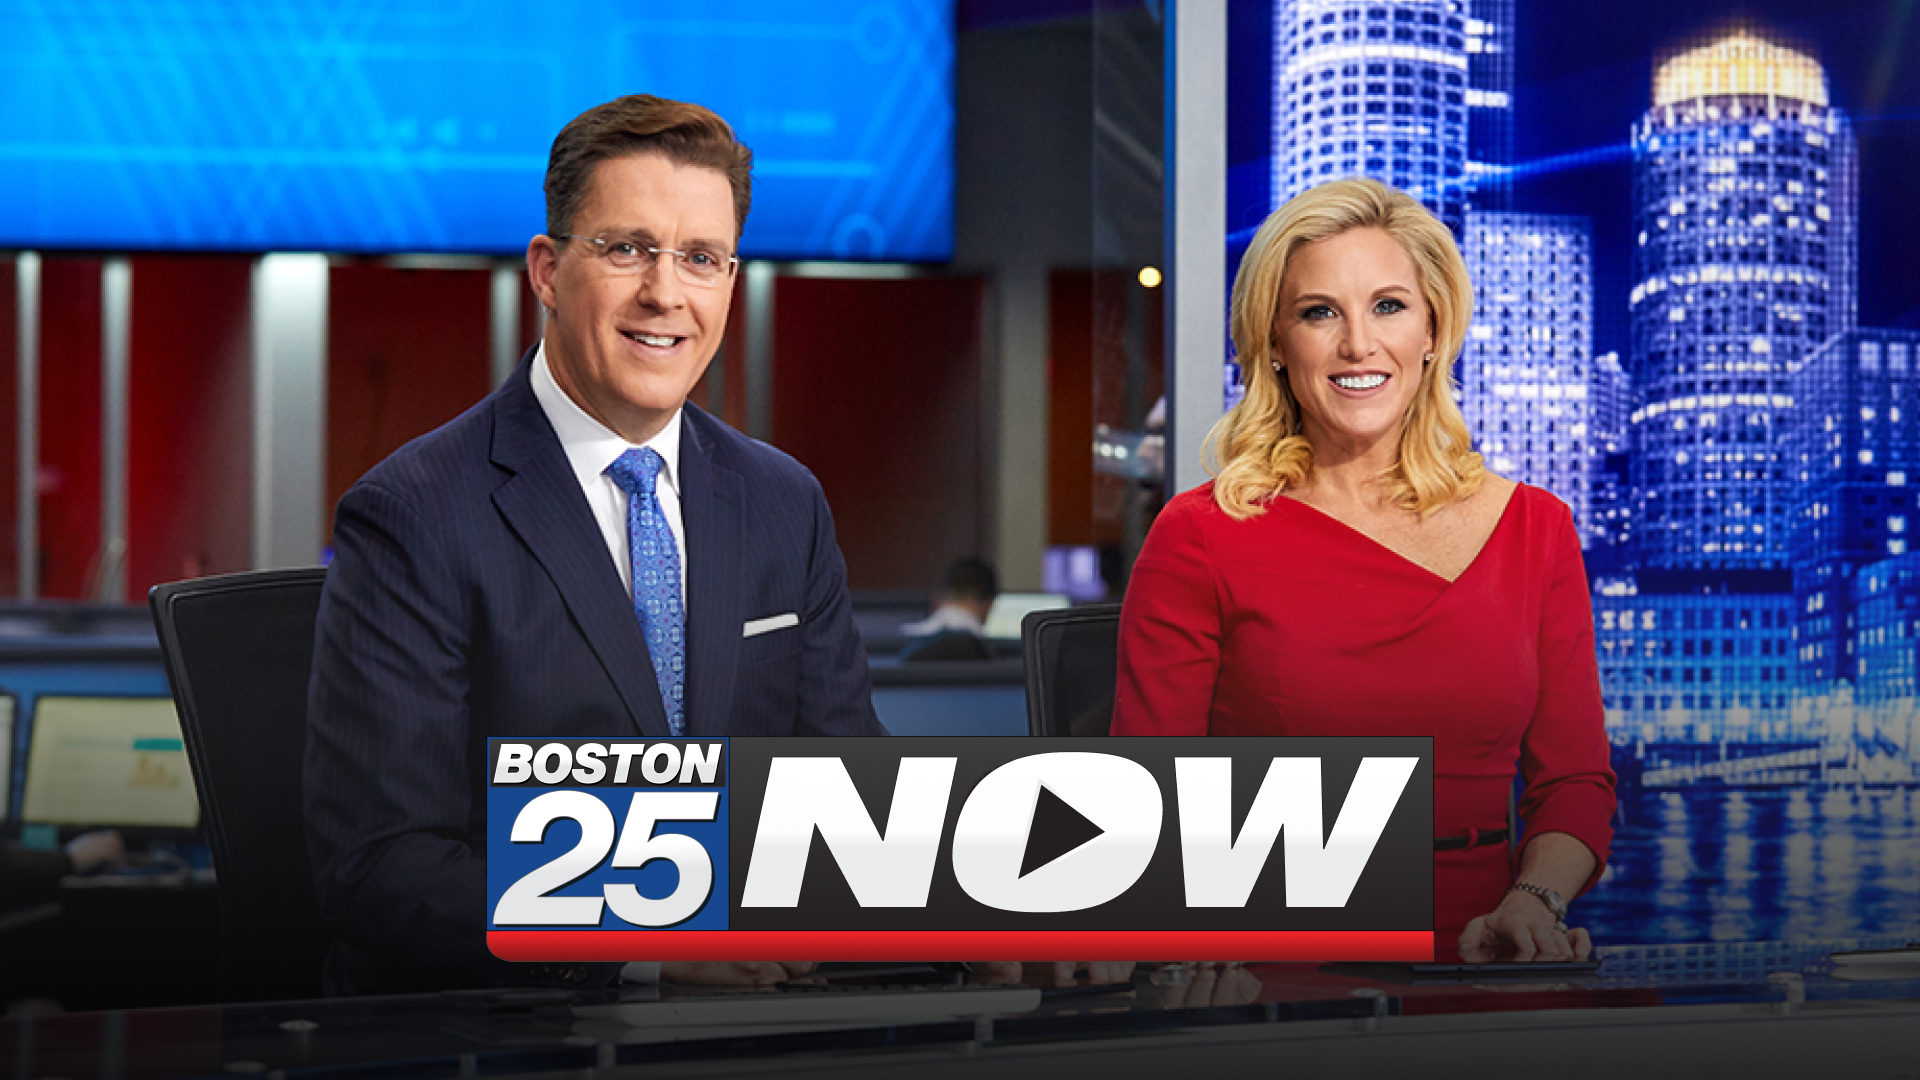 Boston 25 Now live stream